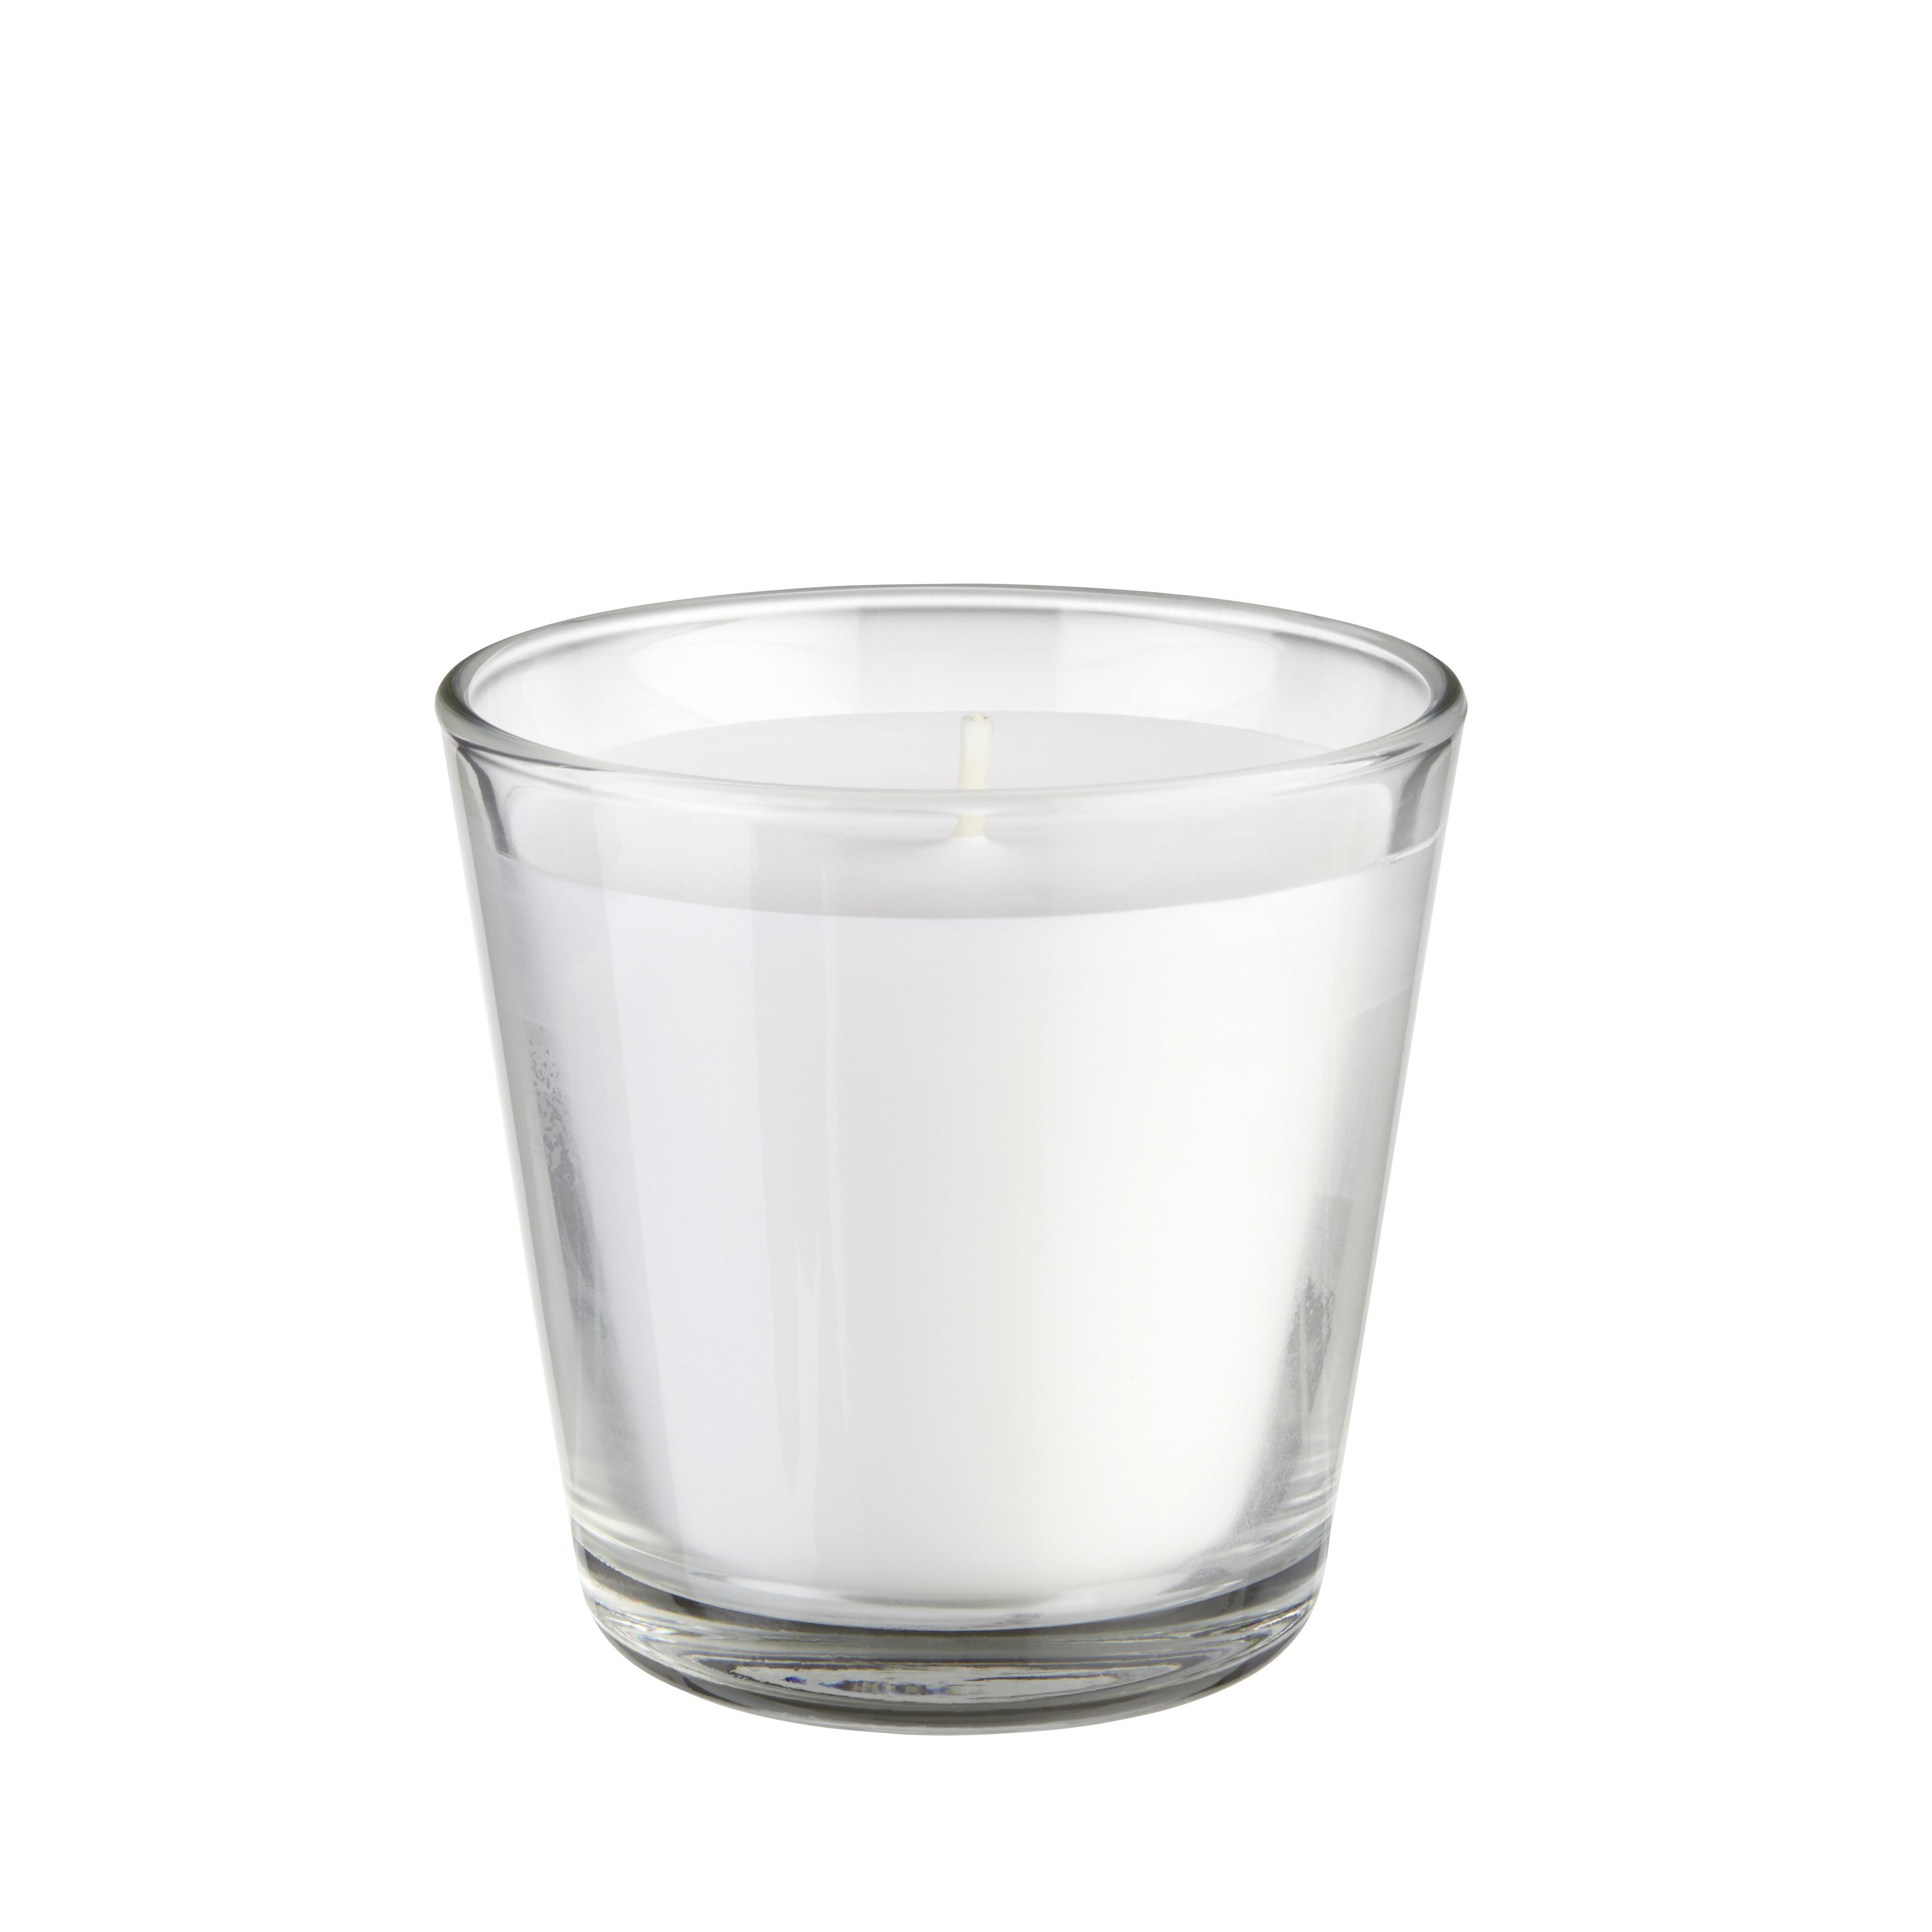 Kerze im Glas EMMA - Klar/Weiß, Glas (7/7cm) - Based